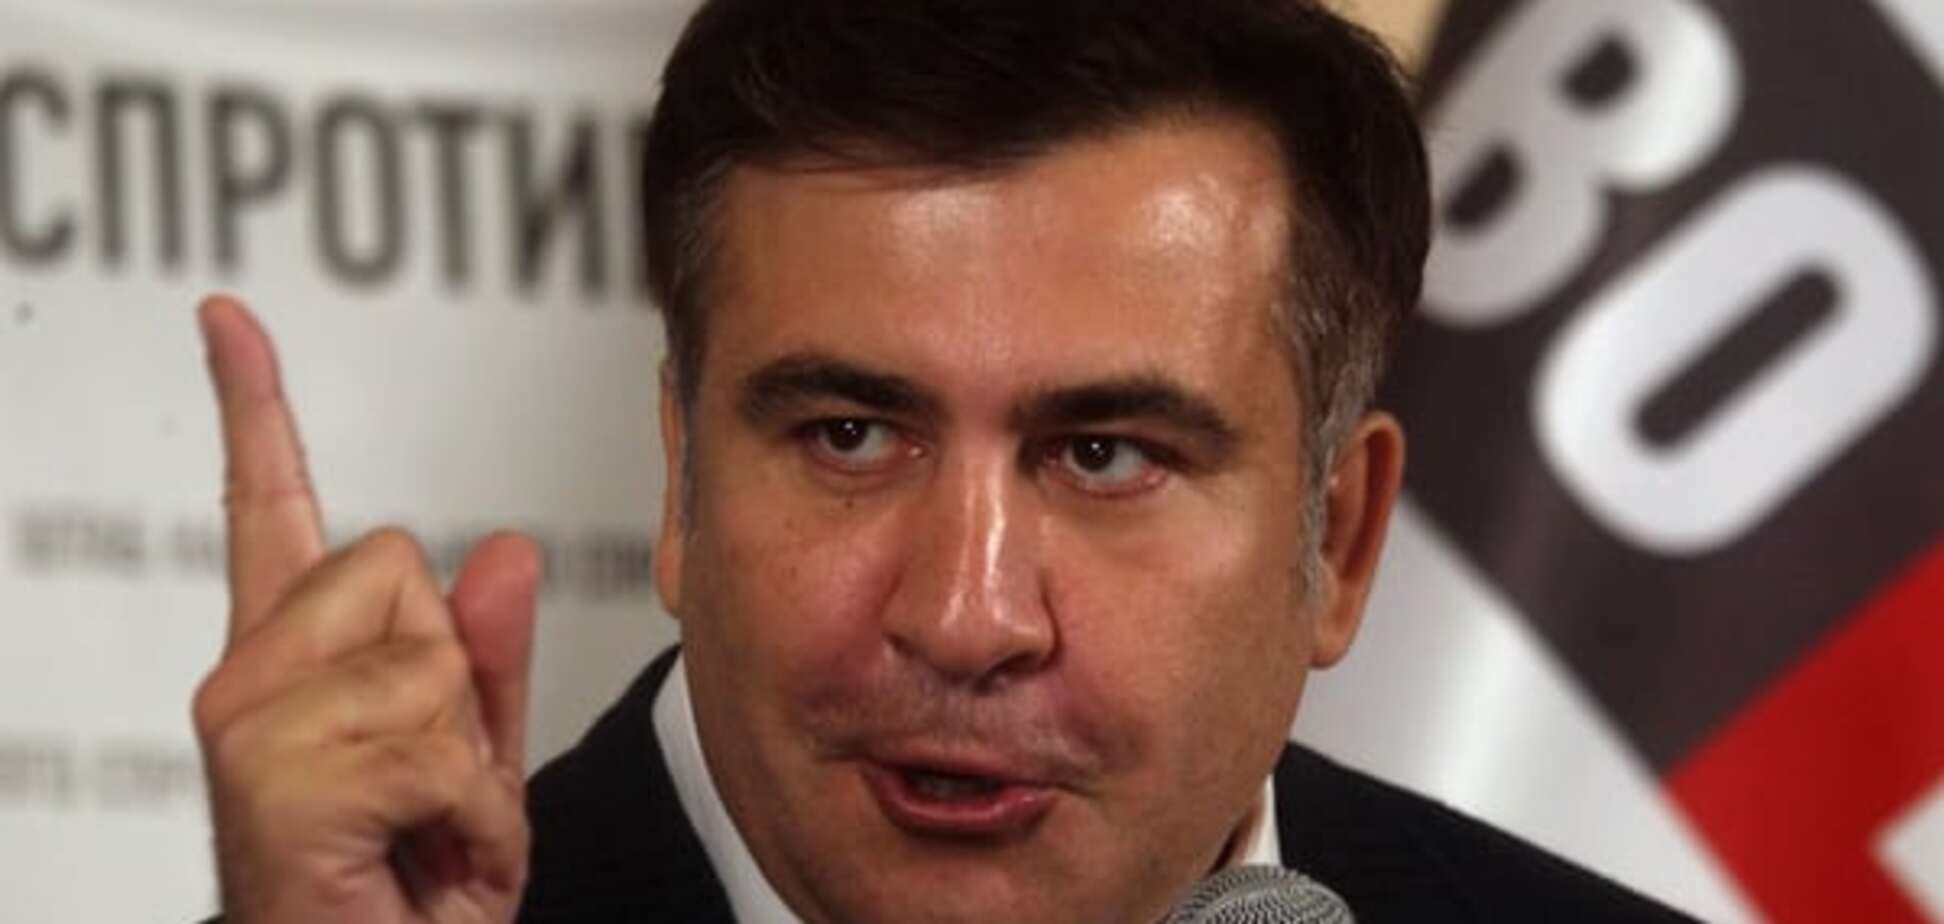 Активисты требуют отправить Саакашвили в отставку